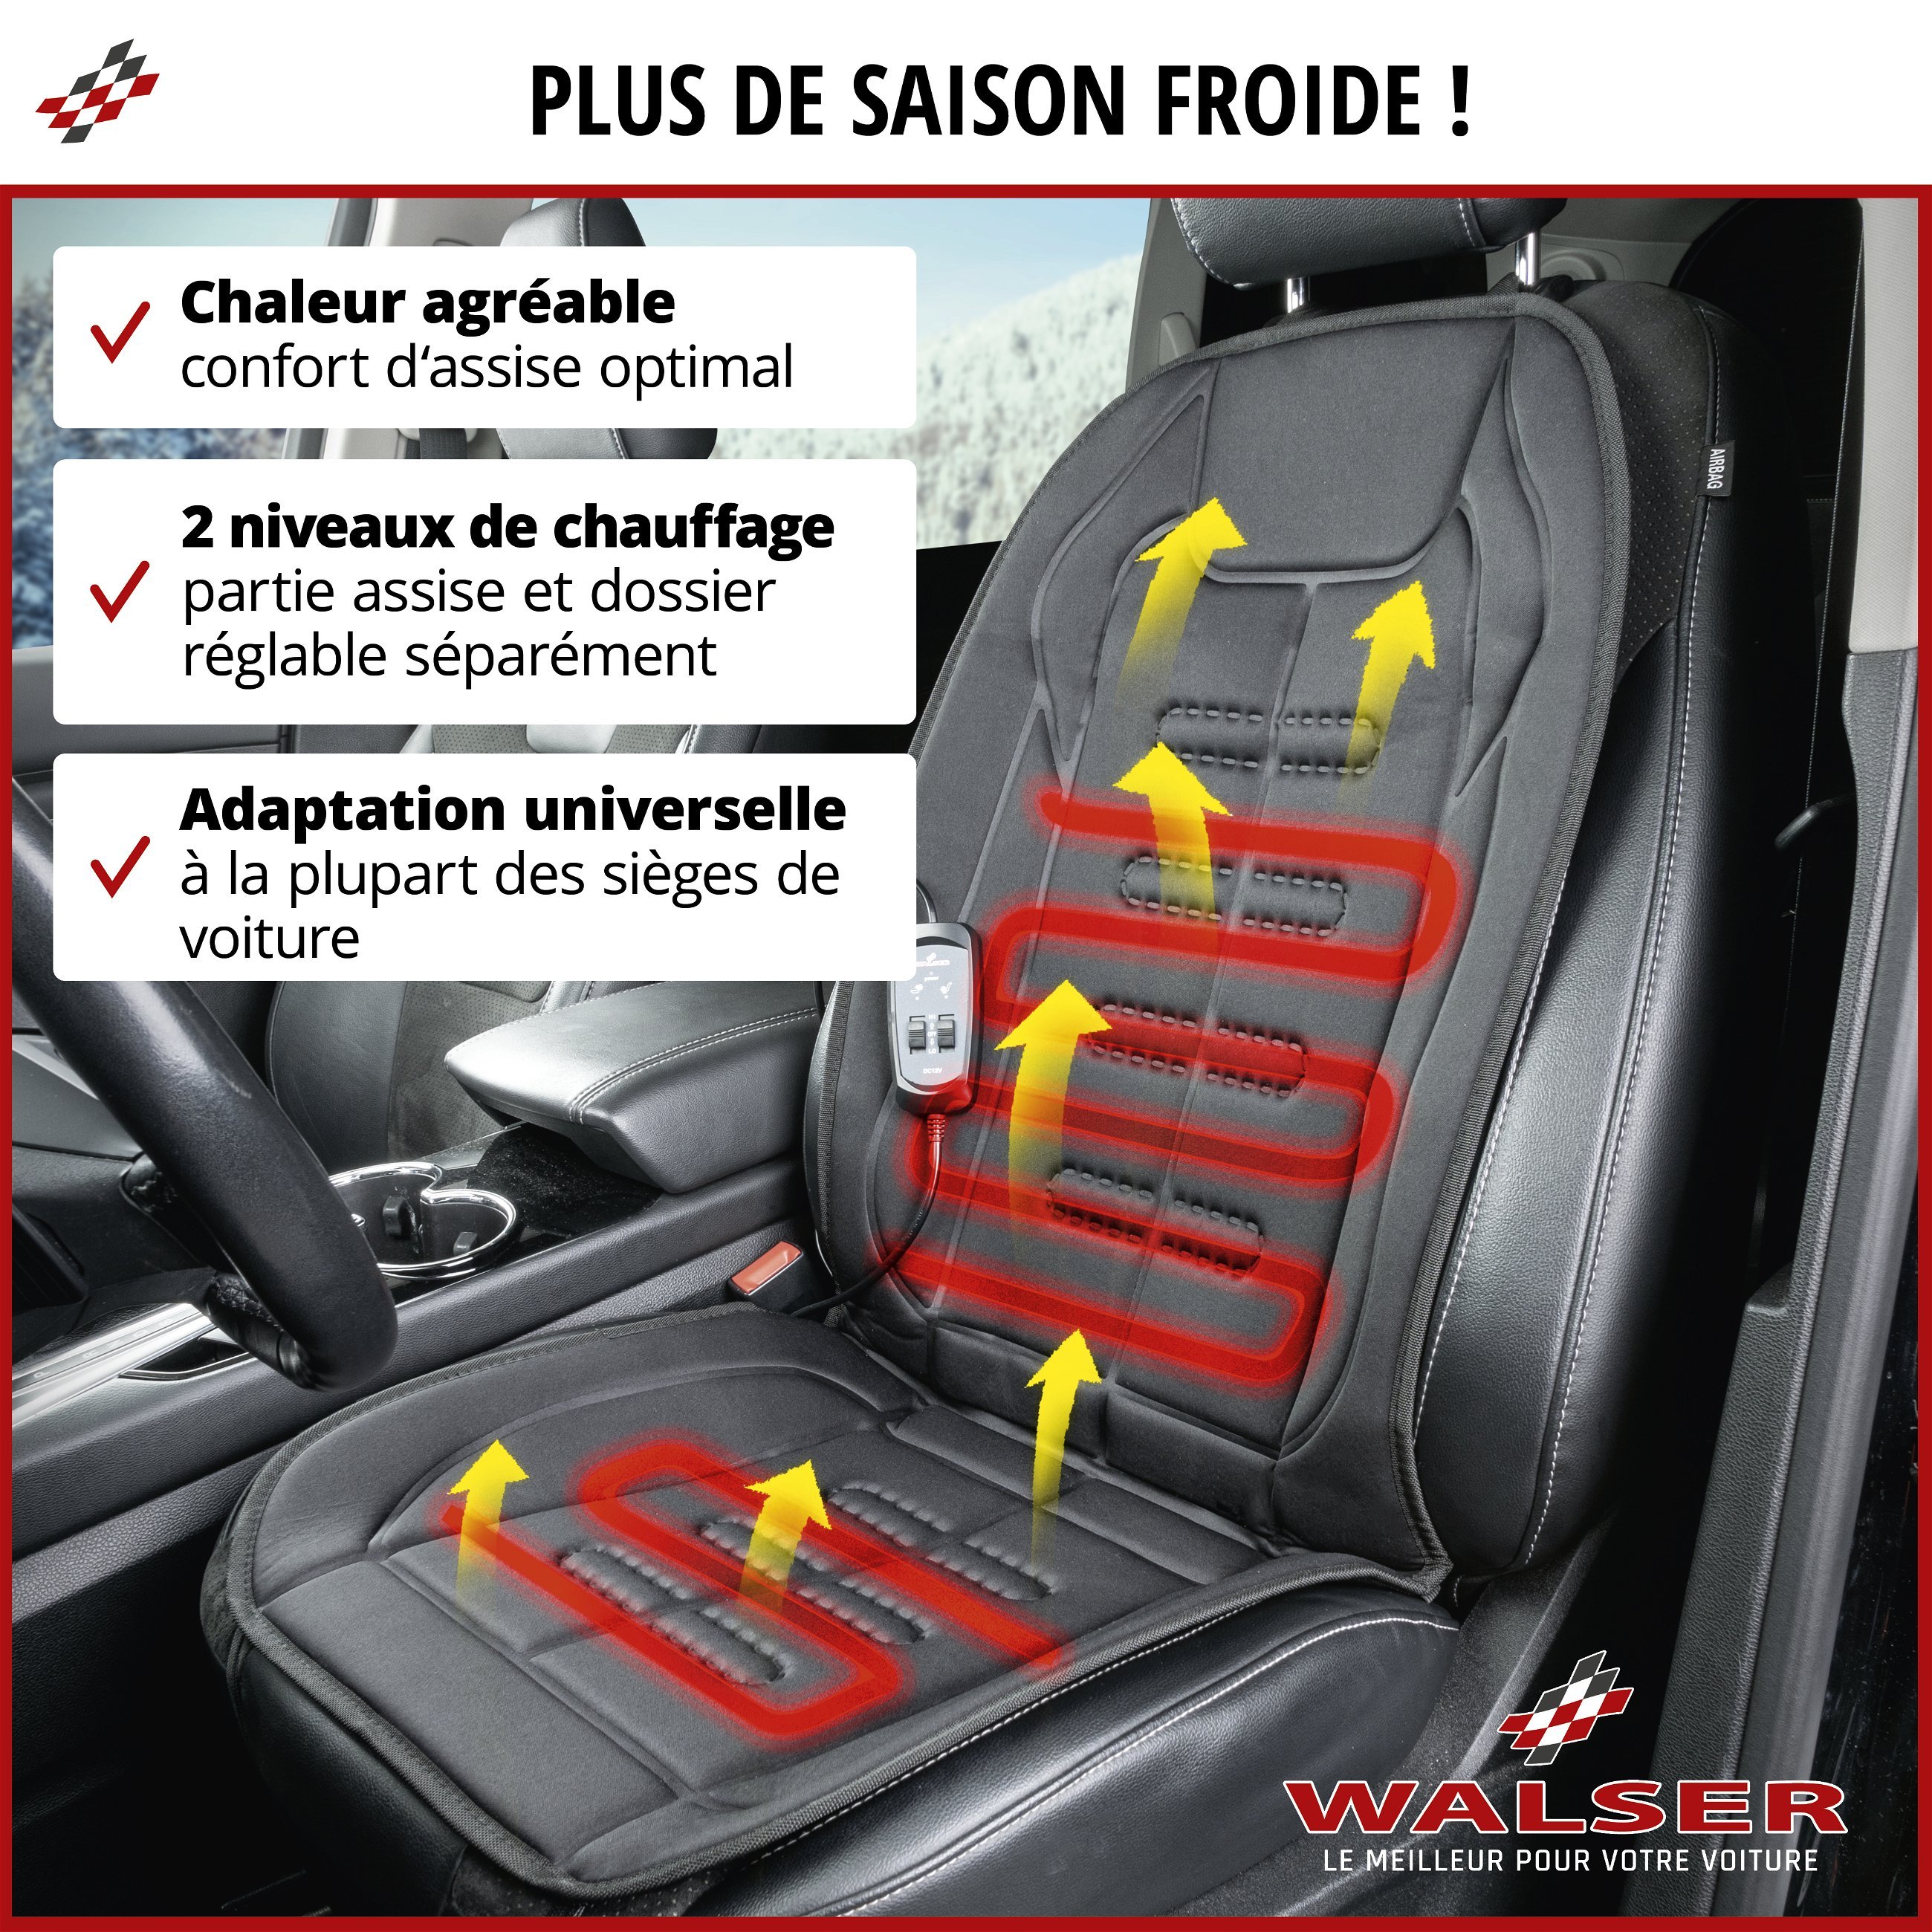 Premium housse de siège chauffante, modèle Caldo - Dossier et assise chauffants individuellement, 2 niveaux de chauffage au choix, chauffage de siège auto avec prise 12 volts